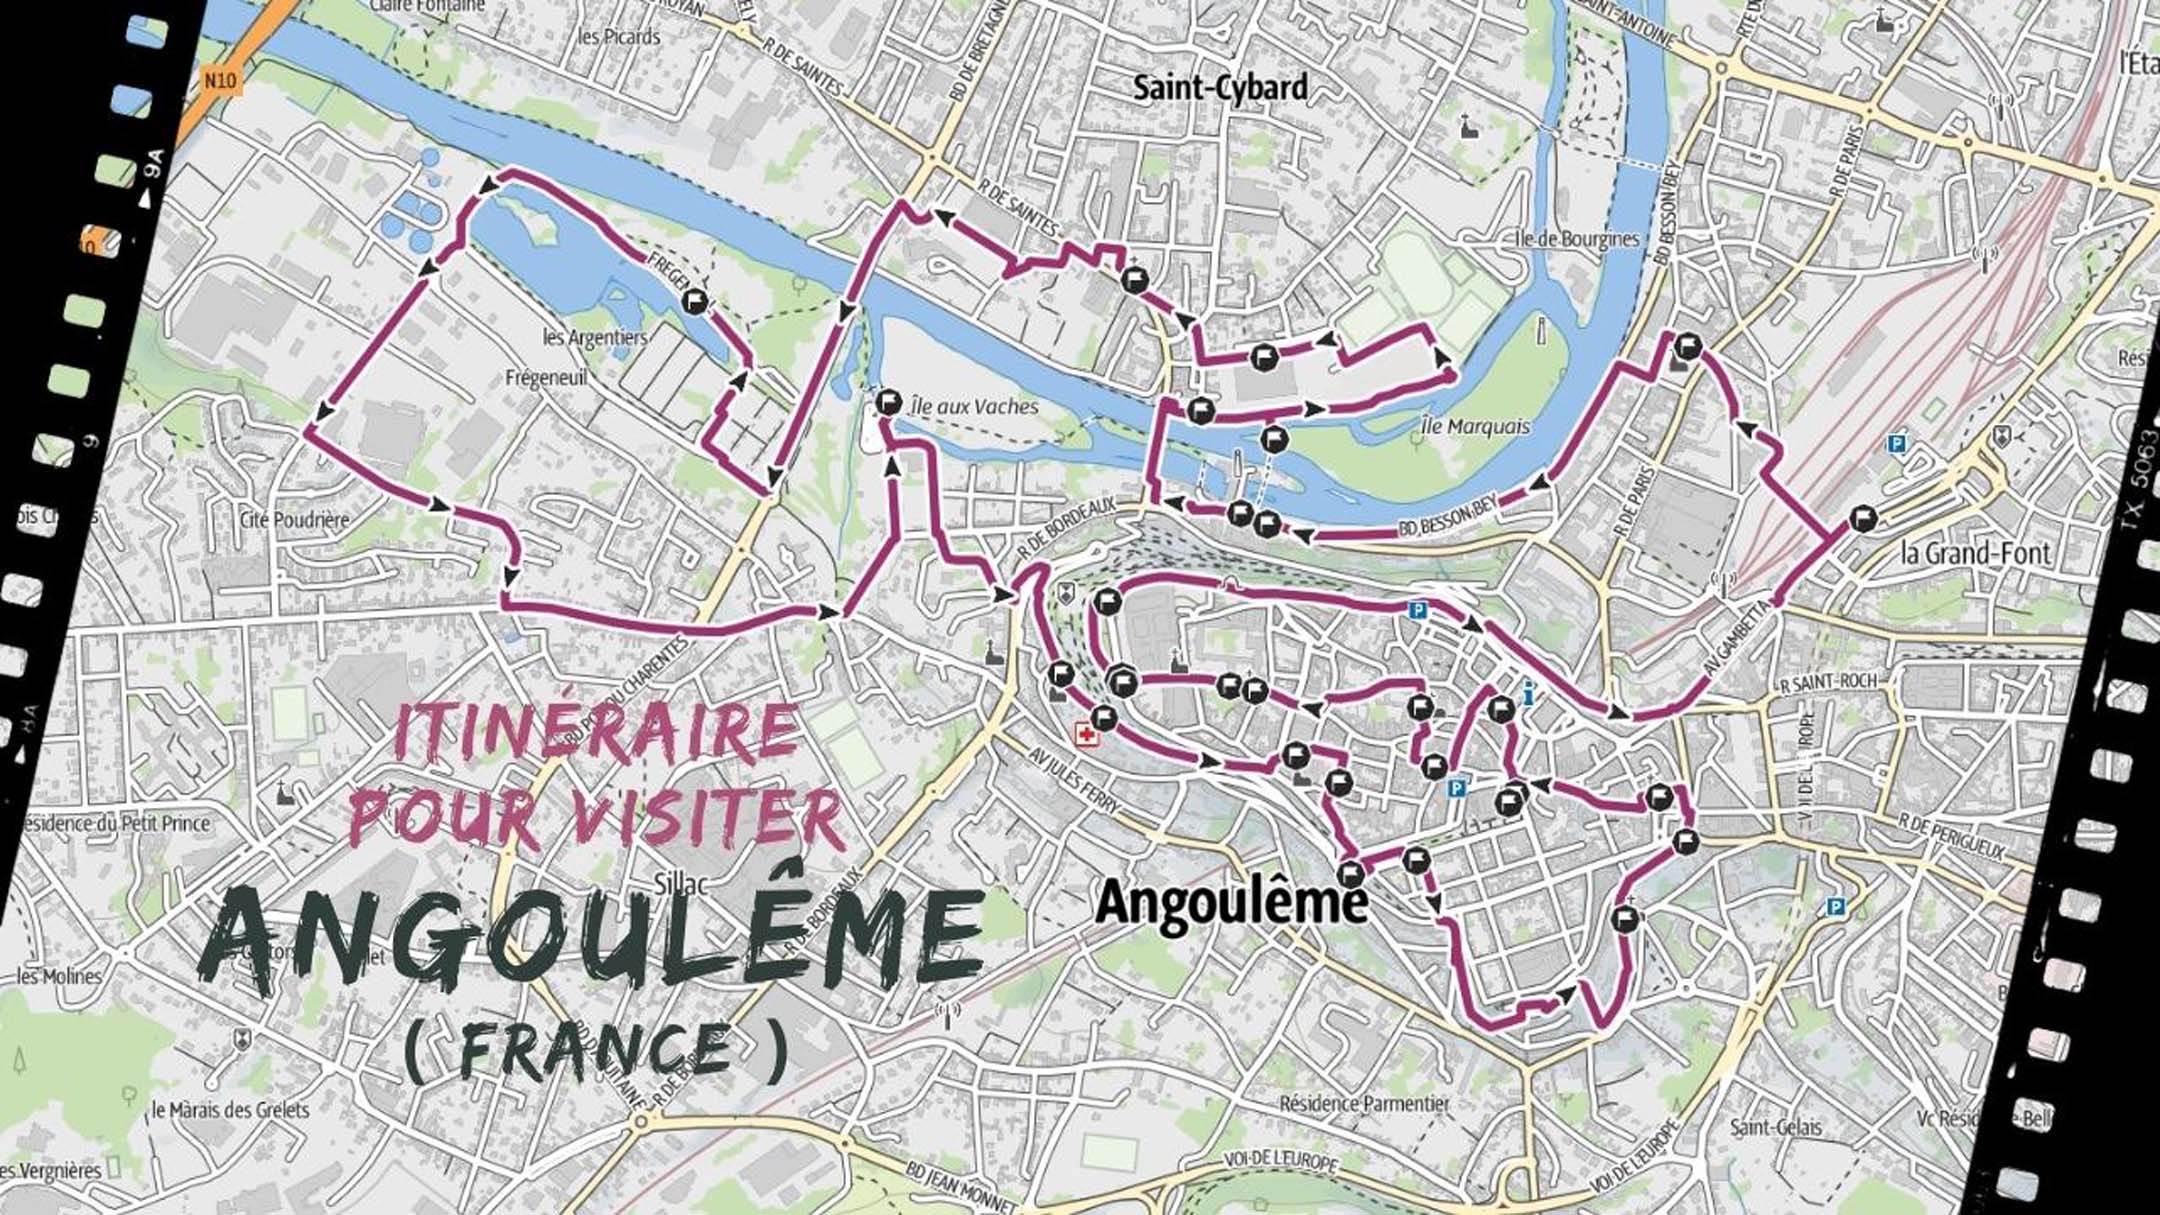 itineraire pour visiter Angoulême en France